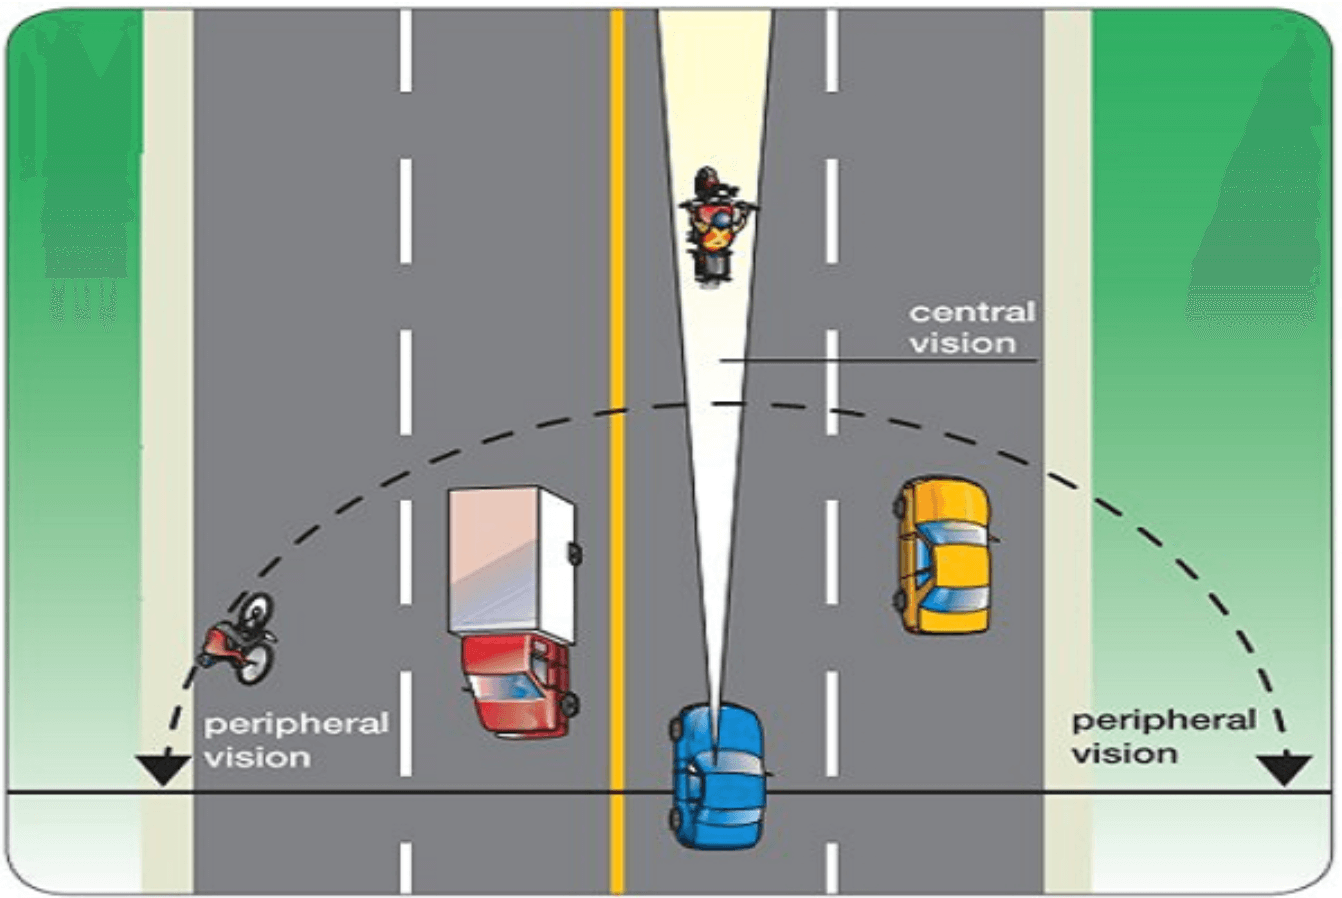 quy tắc khi tham gia giao thông đường bộ